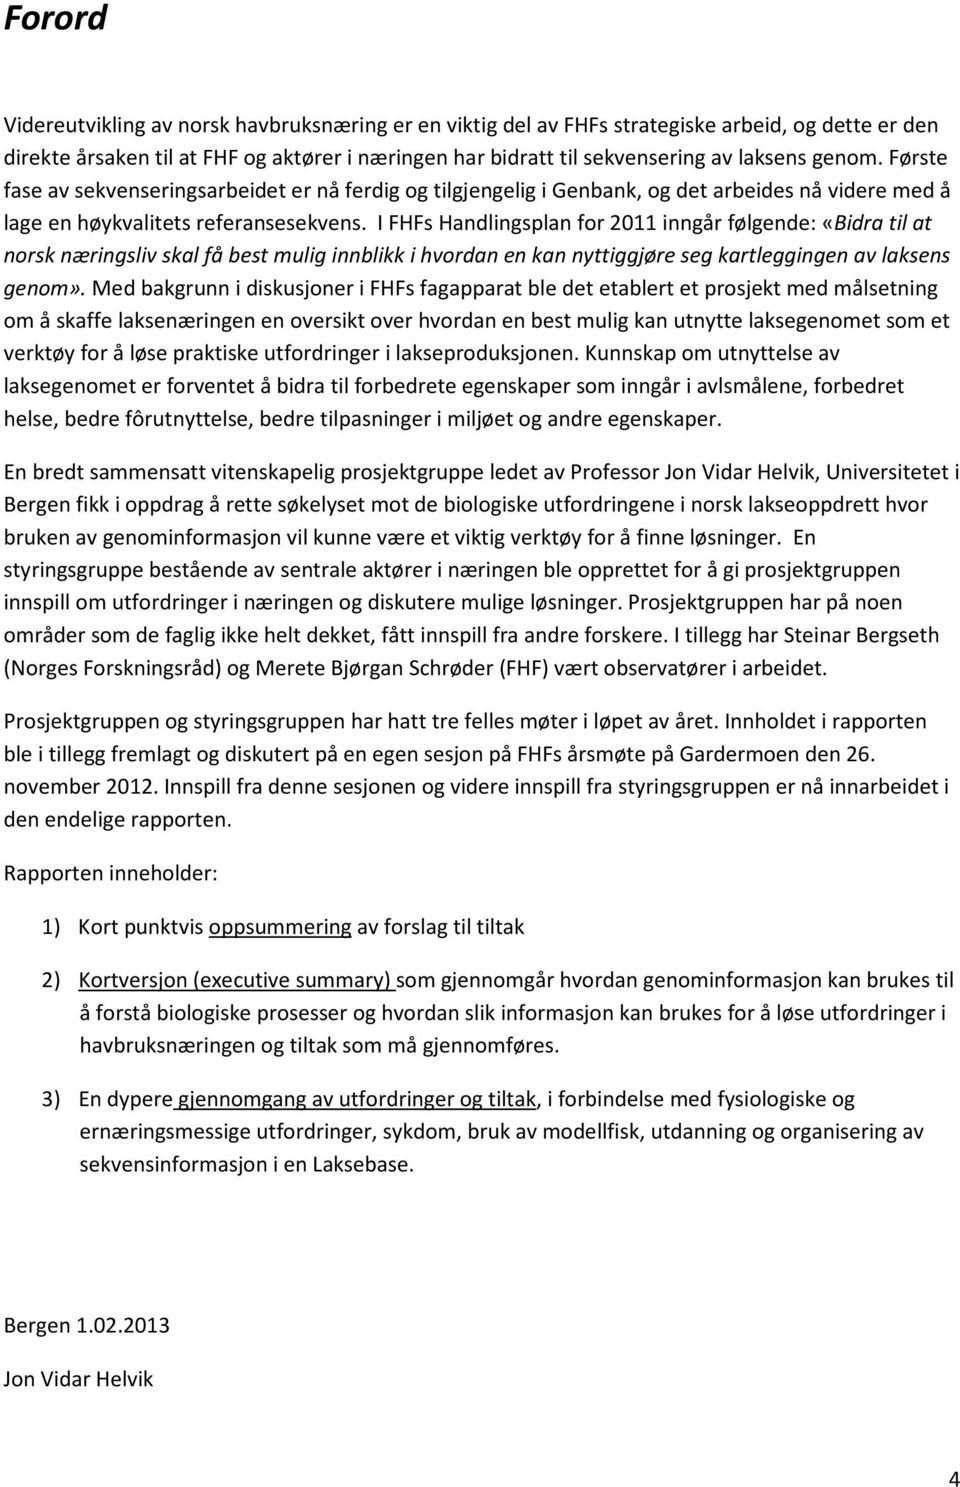 I FHFs Handlingsplan for 2011 inngår følgende: «Bidra til at norsk næringsliv skal få best mulig innblikk i hvordan en kan nyttiggjøre seg kartleggingen av laksens genom».